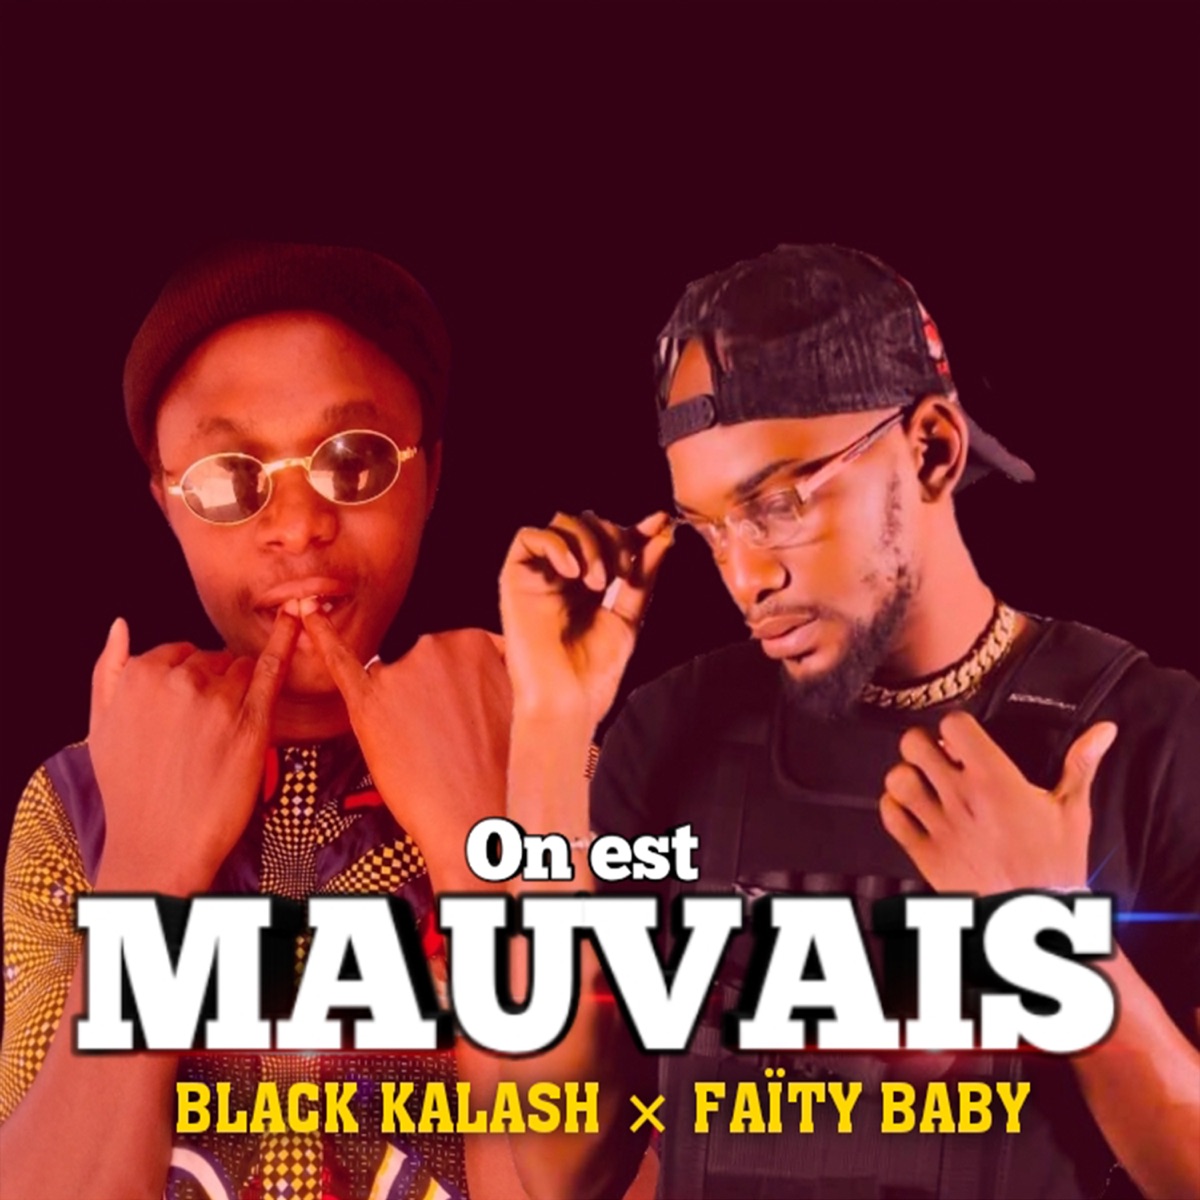 On Est Mauvais - Single - Album by Black kalash - Apple Music